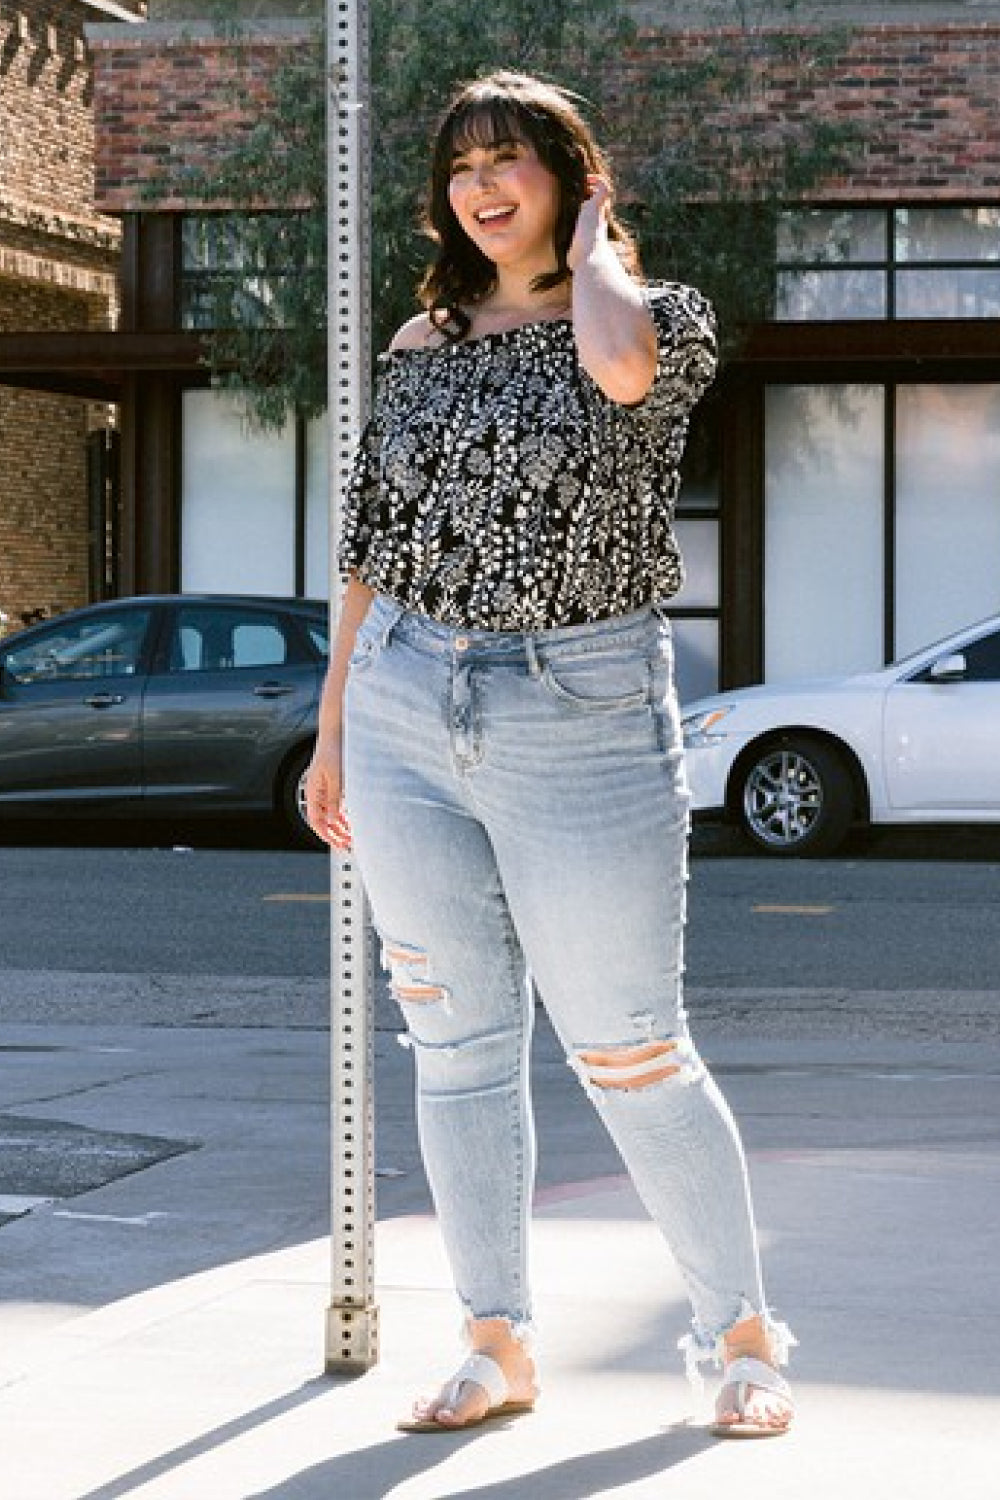 Women's Lovervet Full Size Lauren Distressed High Rise Skinny Jeans